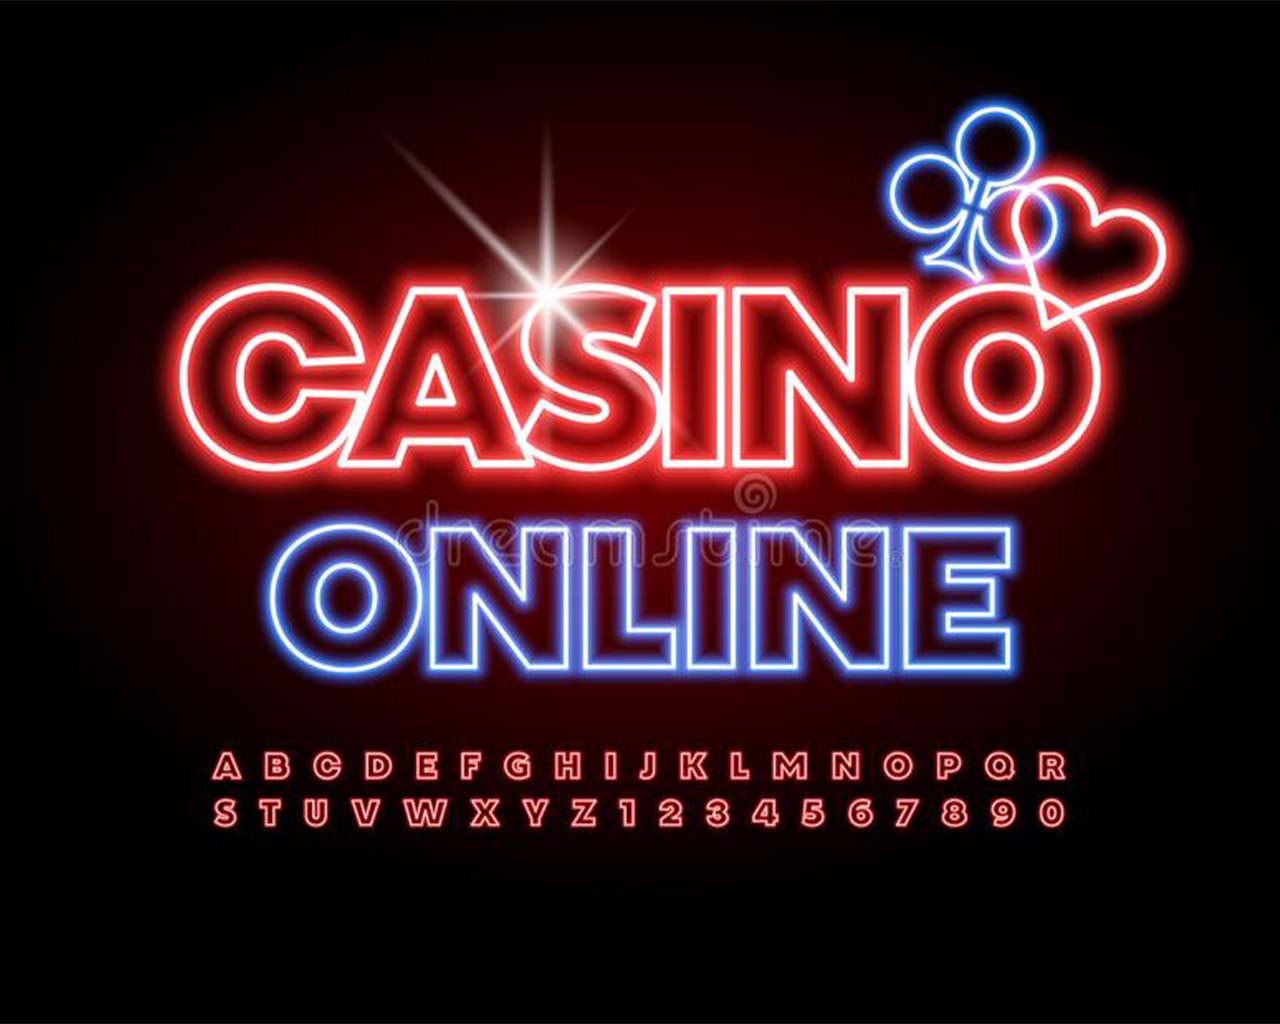 Historia corta: La verdad sobre casino Chile online